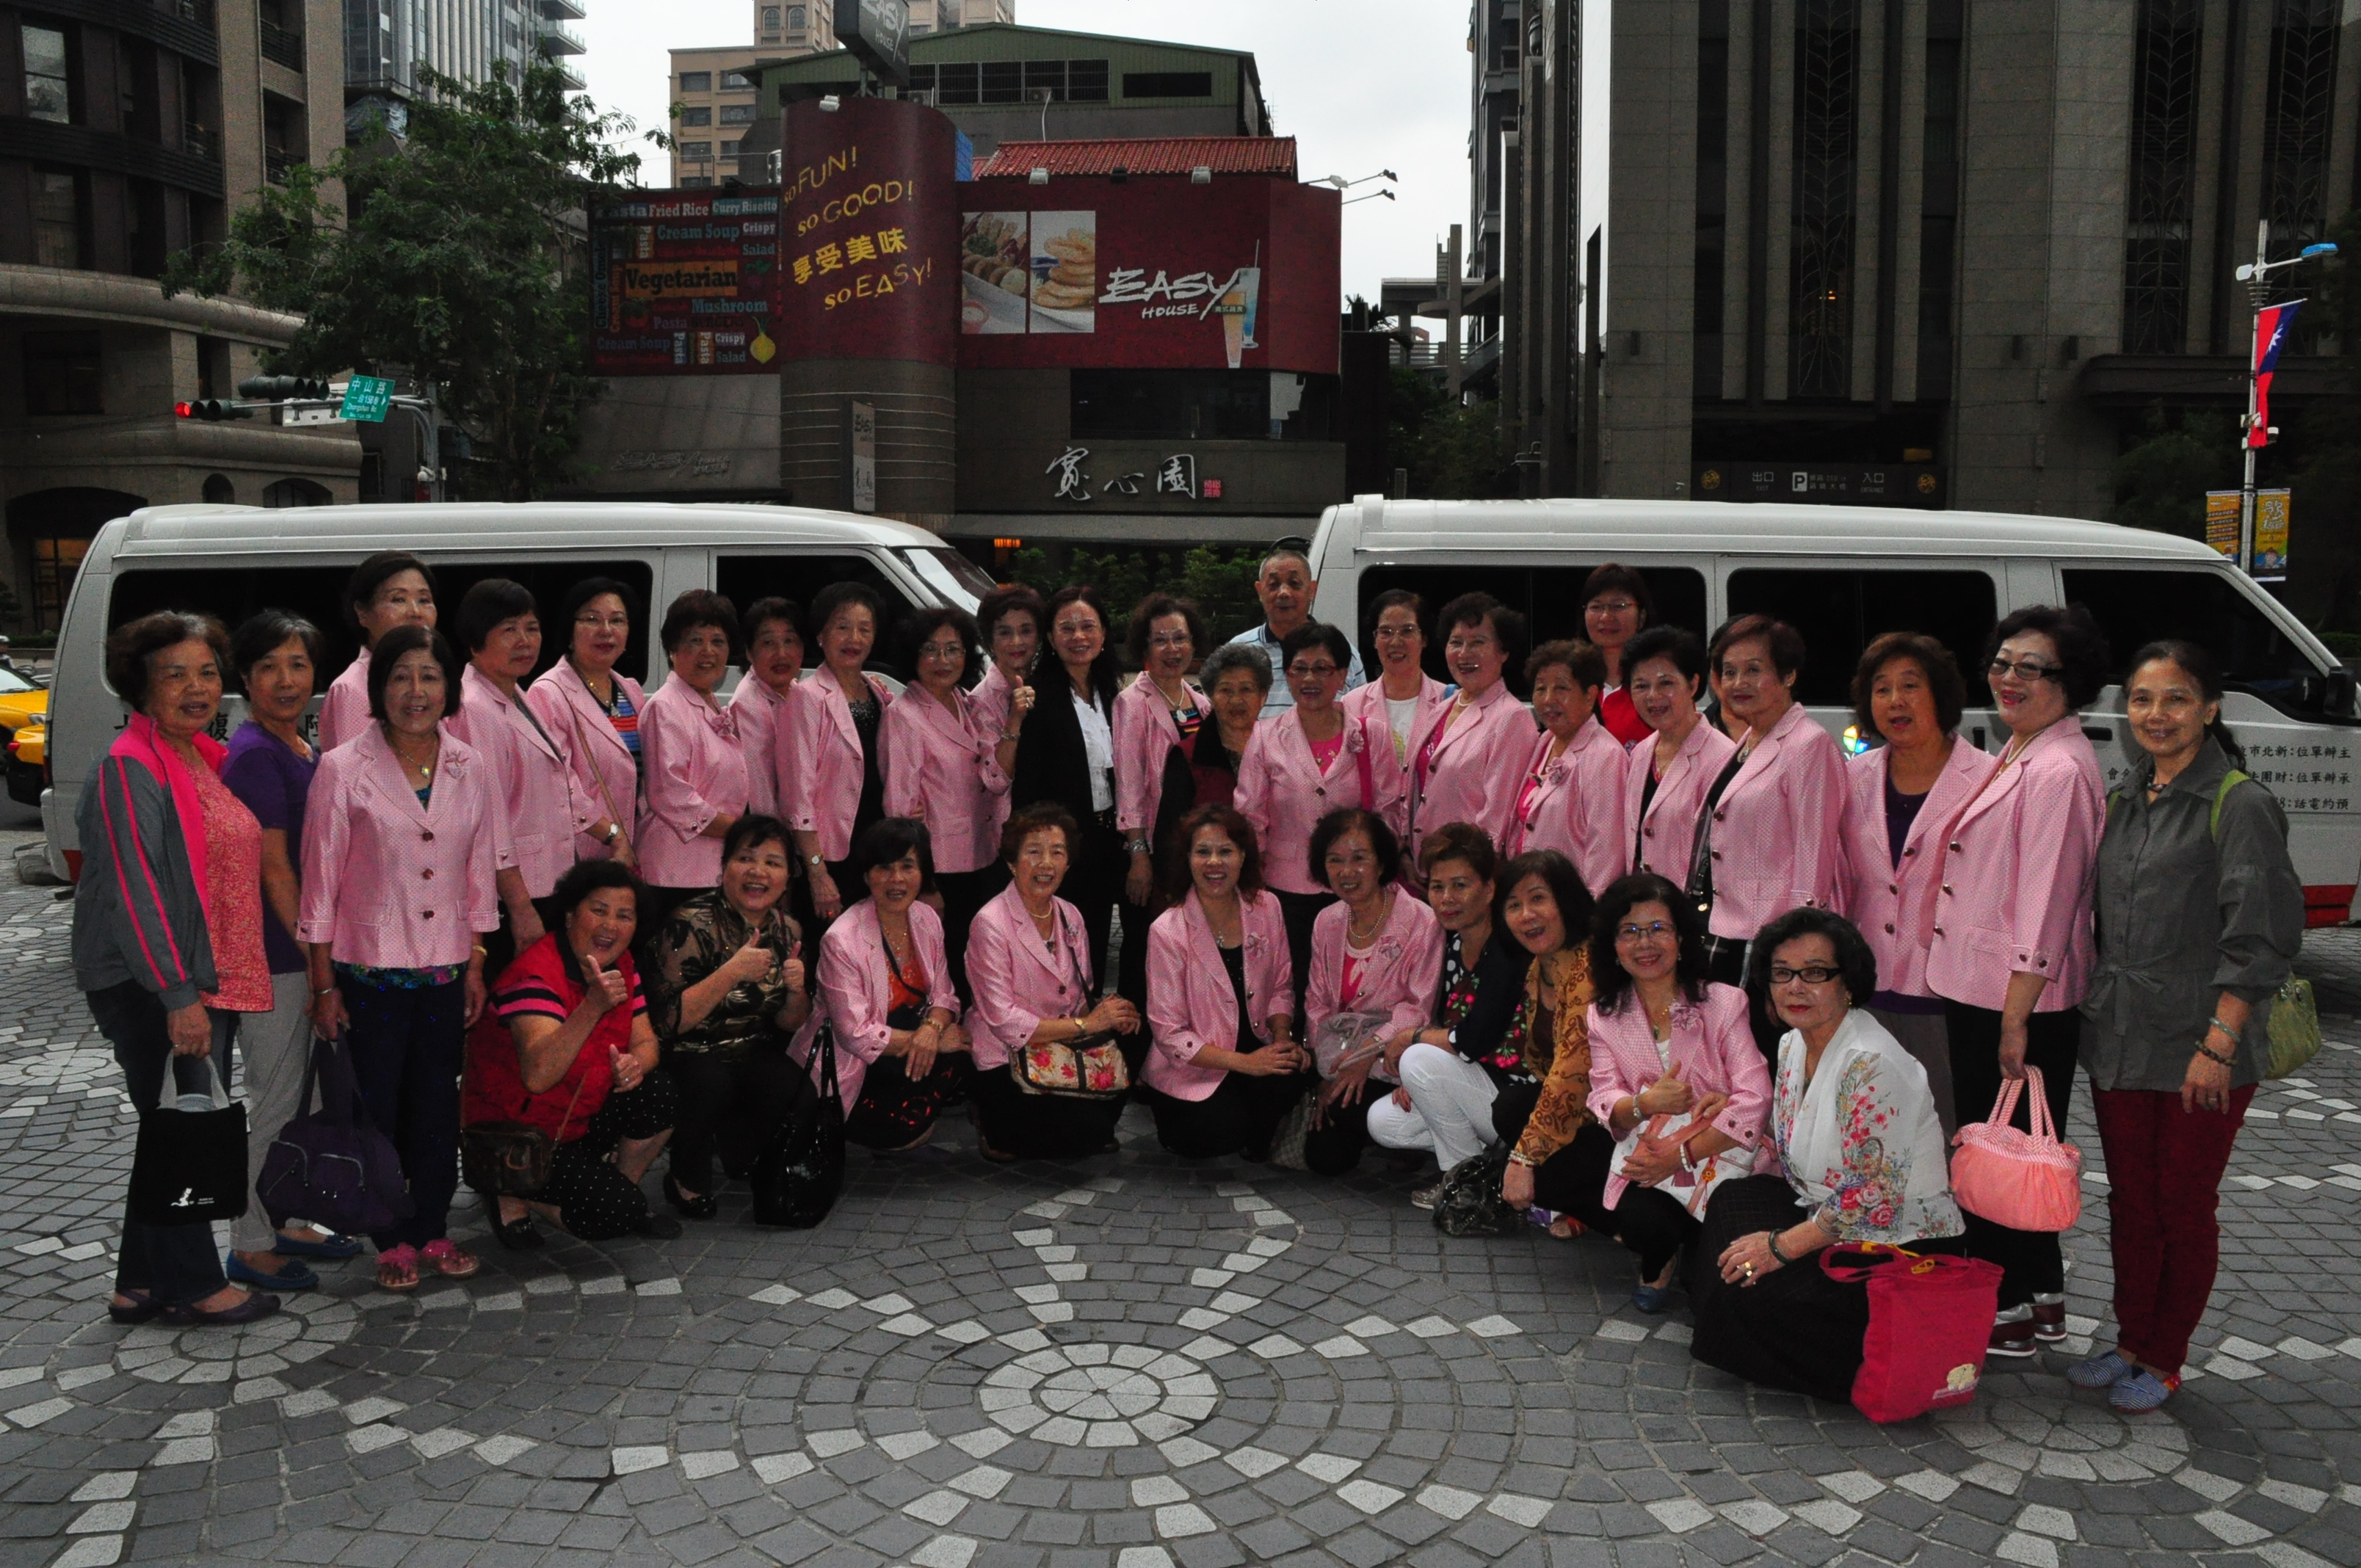 板橋區婦女愛心會捐贈新北市2輛復康巴士

